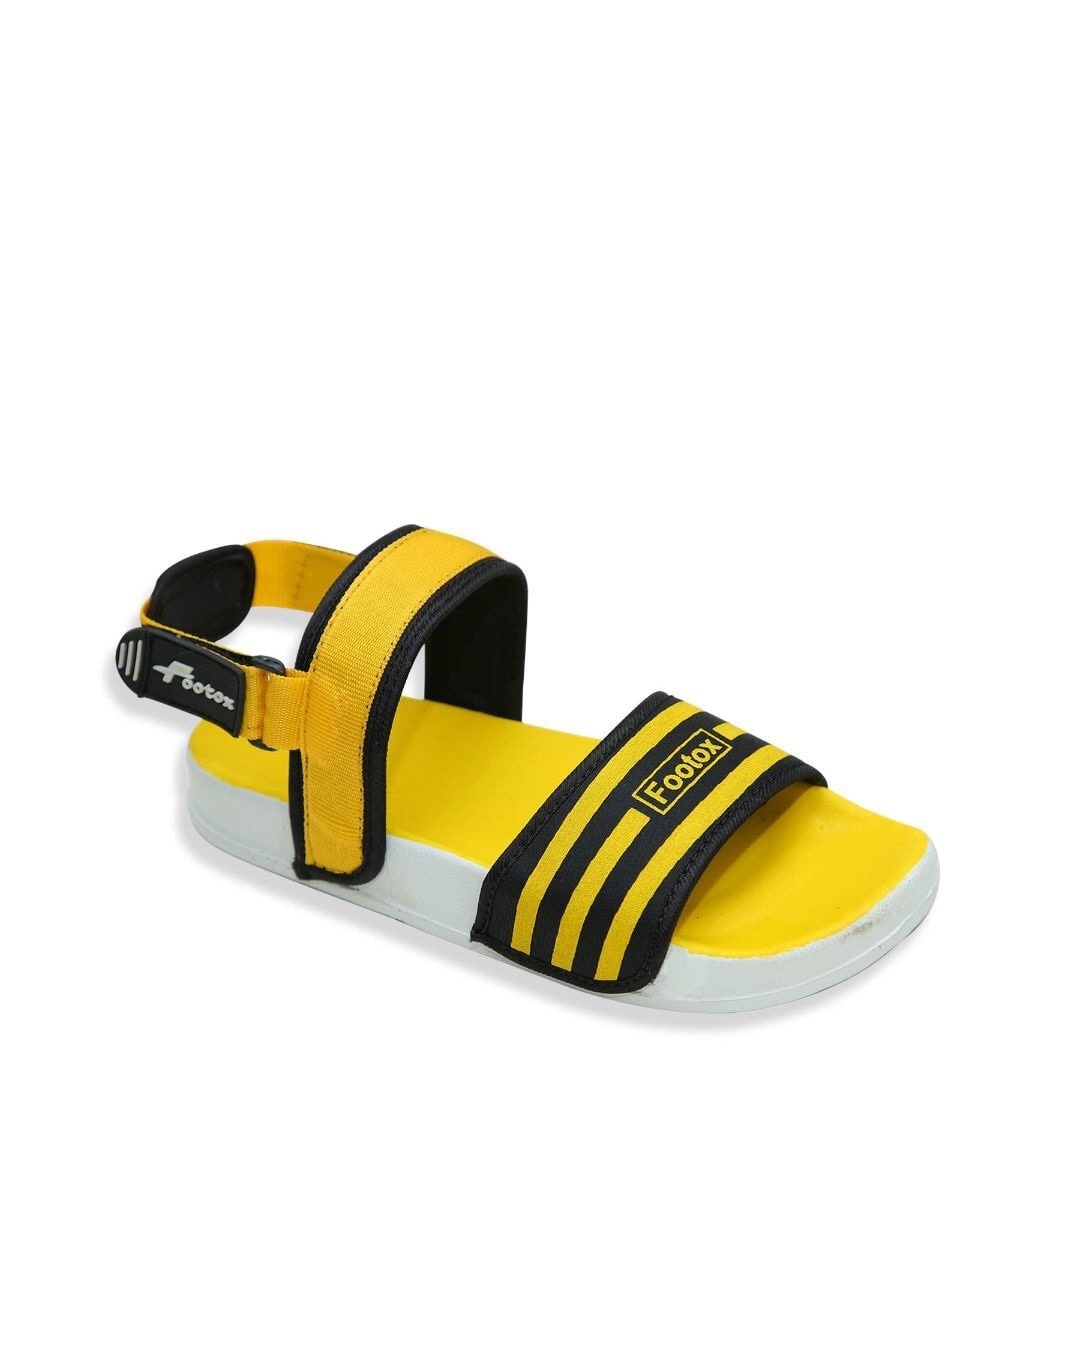 Shop Yellow Comfort Sandals For Men